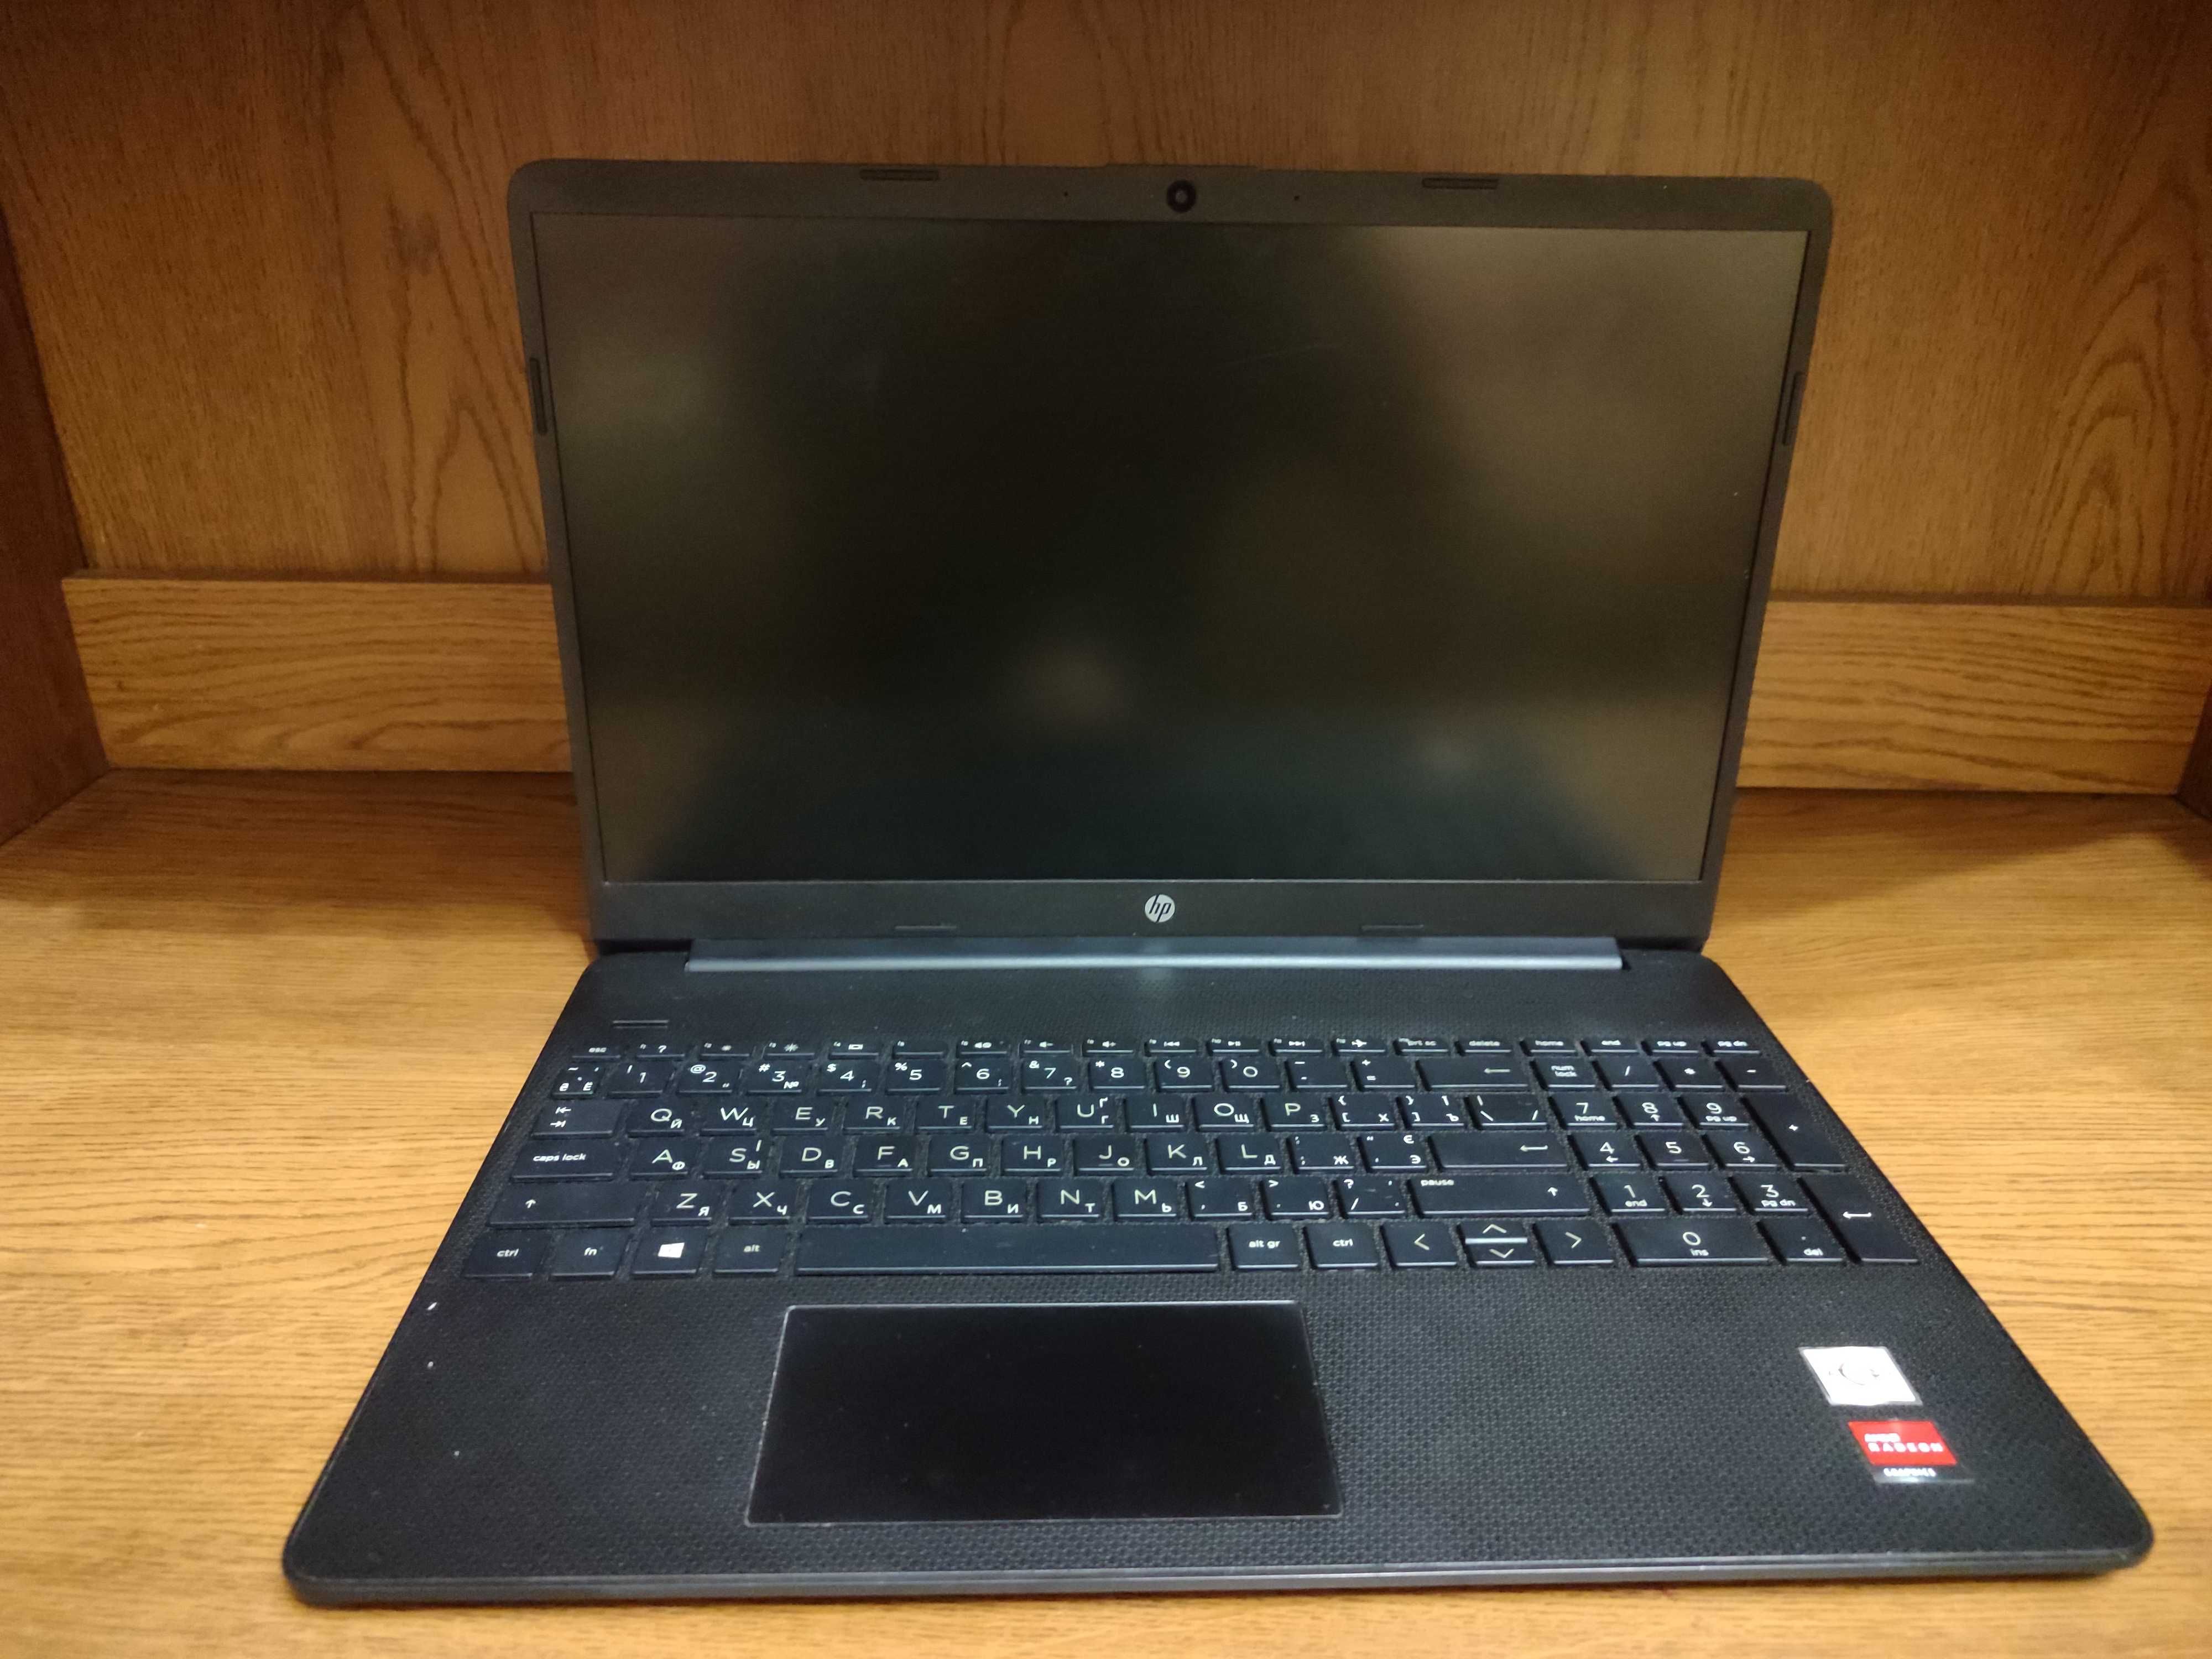 Ноутбук HP 15s-eq1005ua